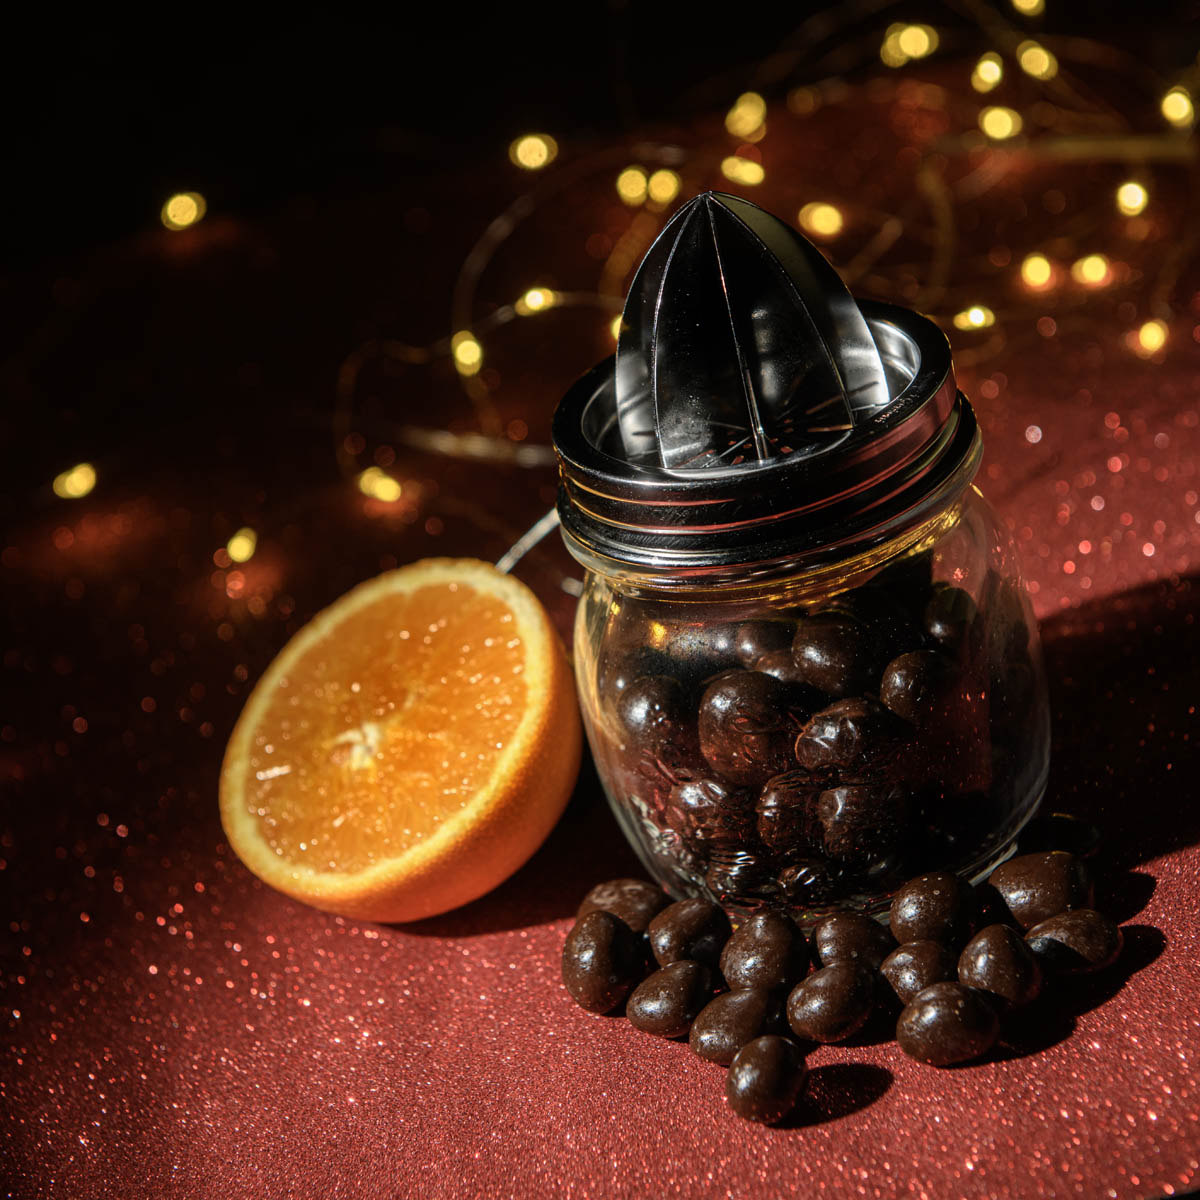 Spremi agrumi con dragées all'arancia candita - Cioccolato Collefiorito